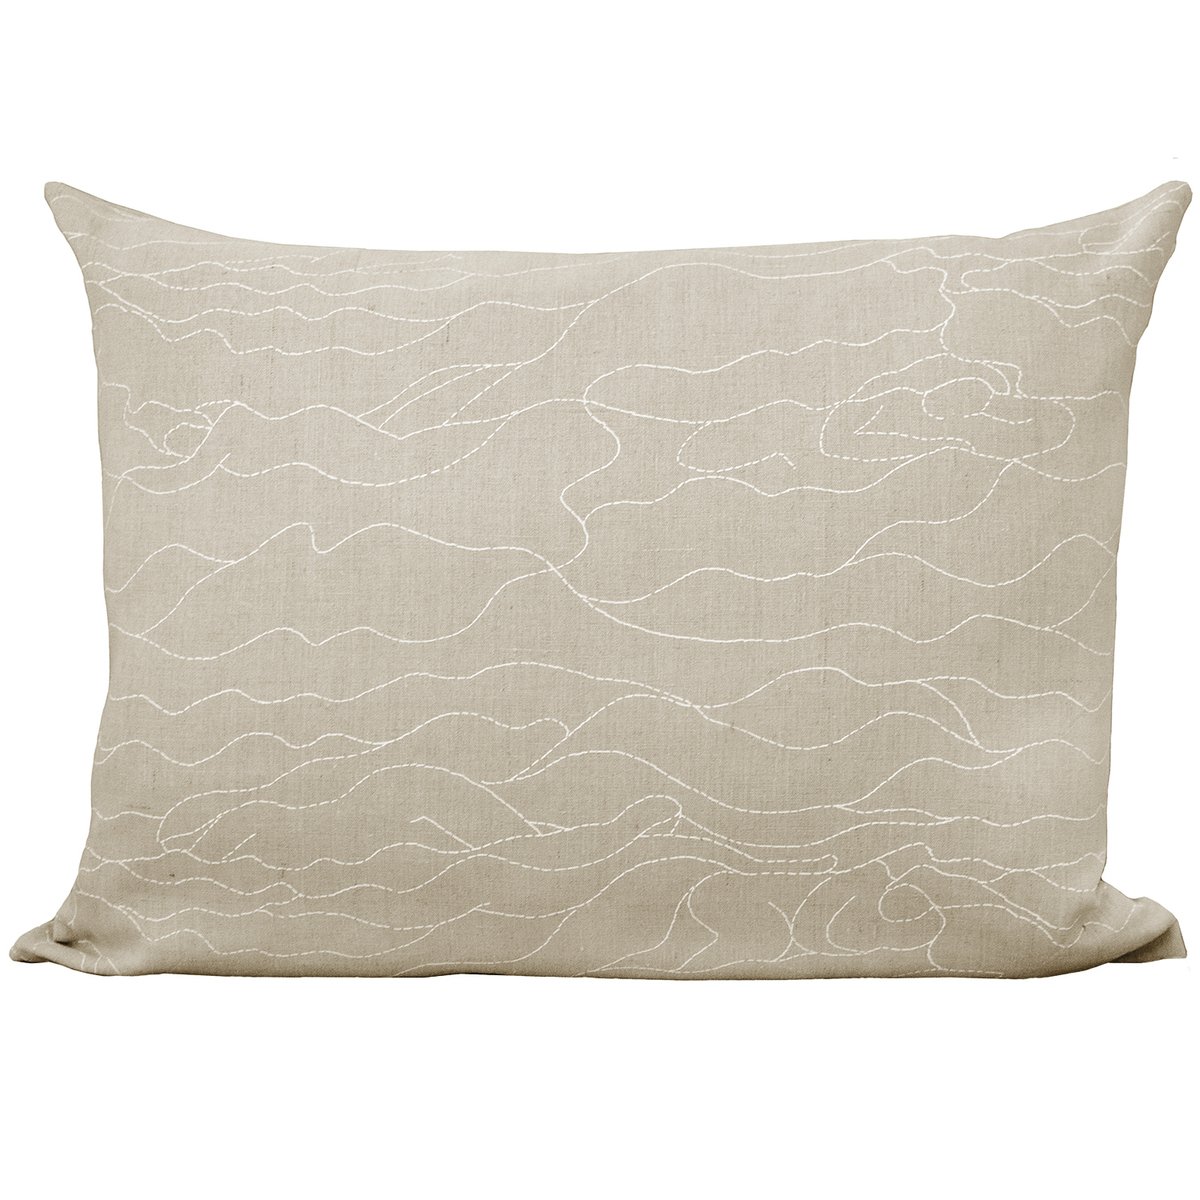 Saana ja Olli Rakkauden meri tyynynpäällinen, 60 x 80 cm, beige - valkoinen